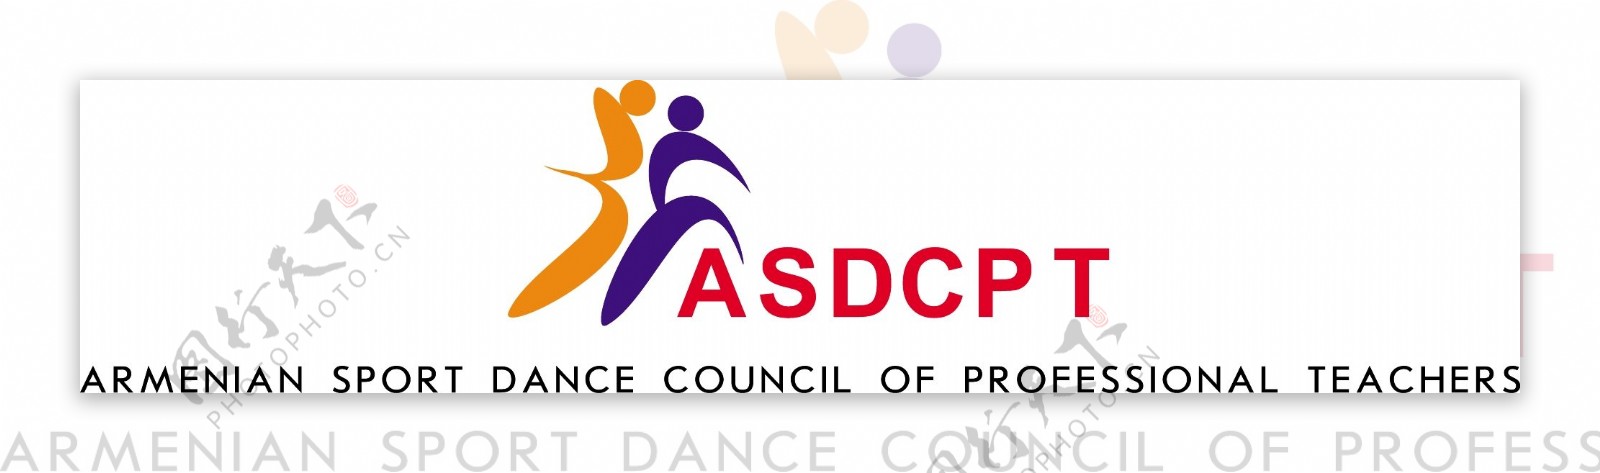 亚美尼亚体育舞蹈专业教师协会